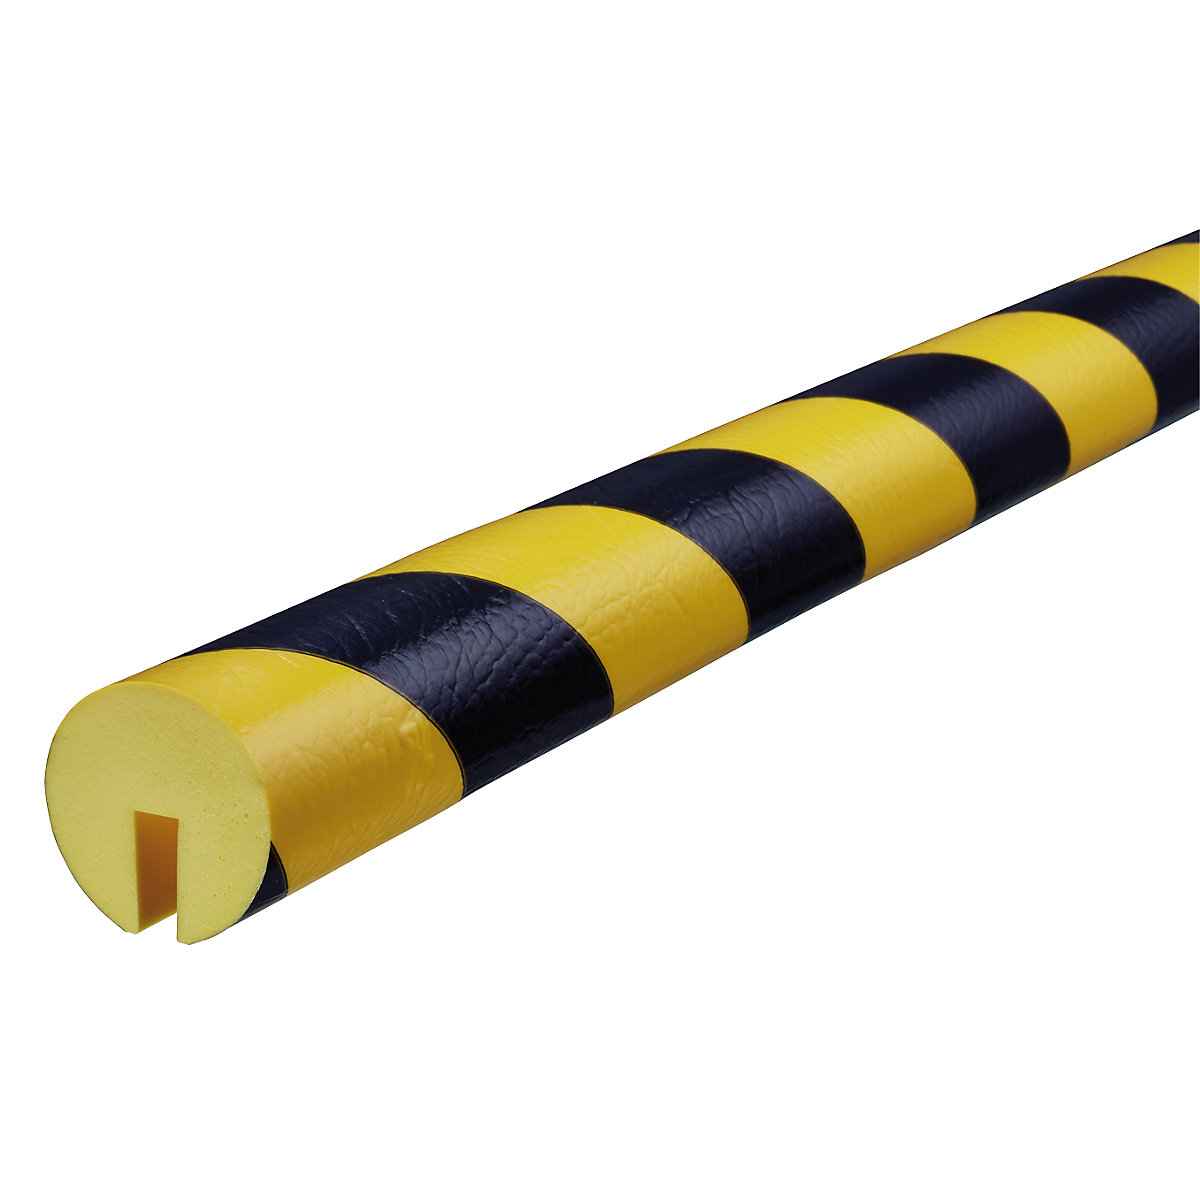 SHG – Proteção de rebordos Knuffi®, tipo B+, unidade de 1 m, preto/amarelo